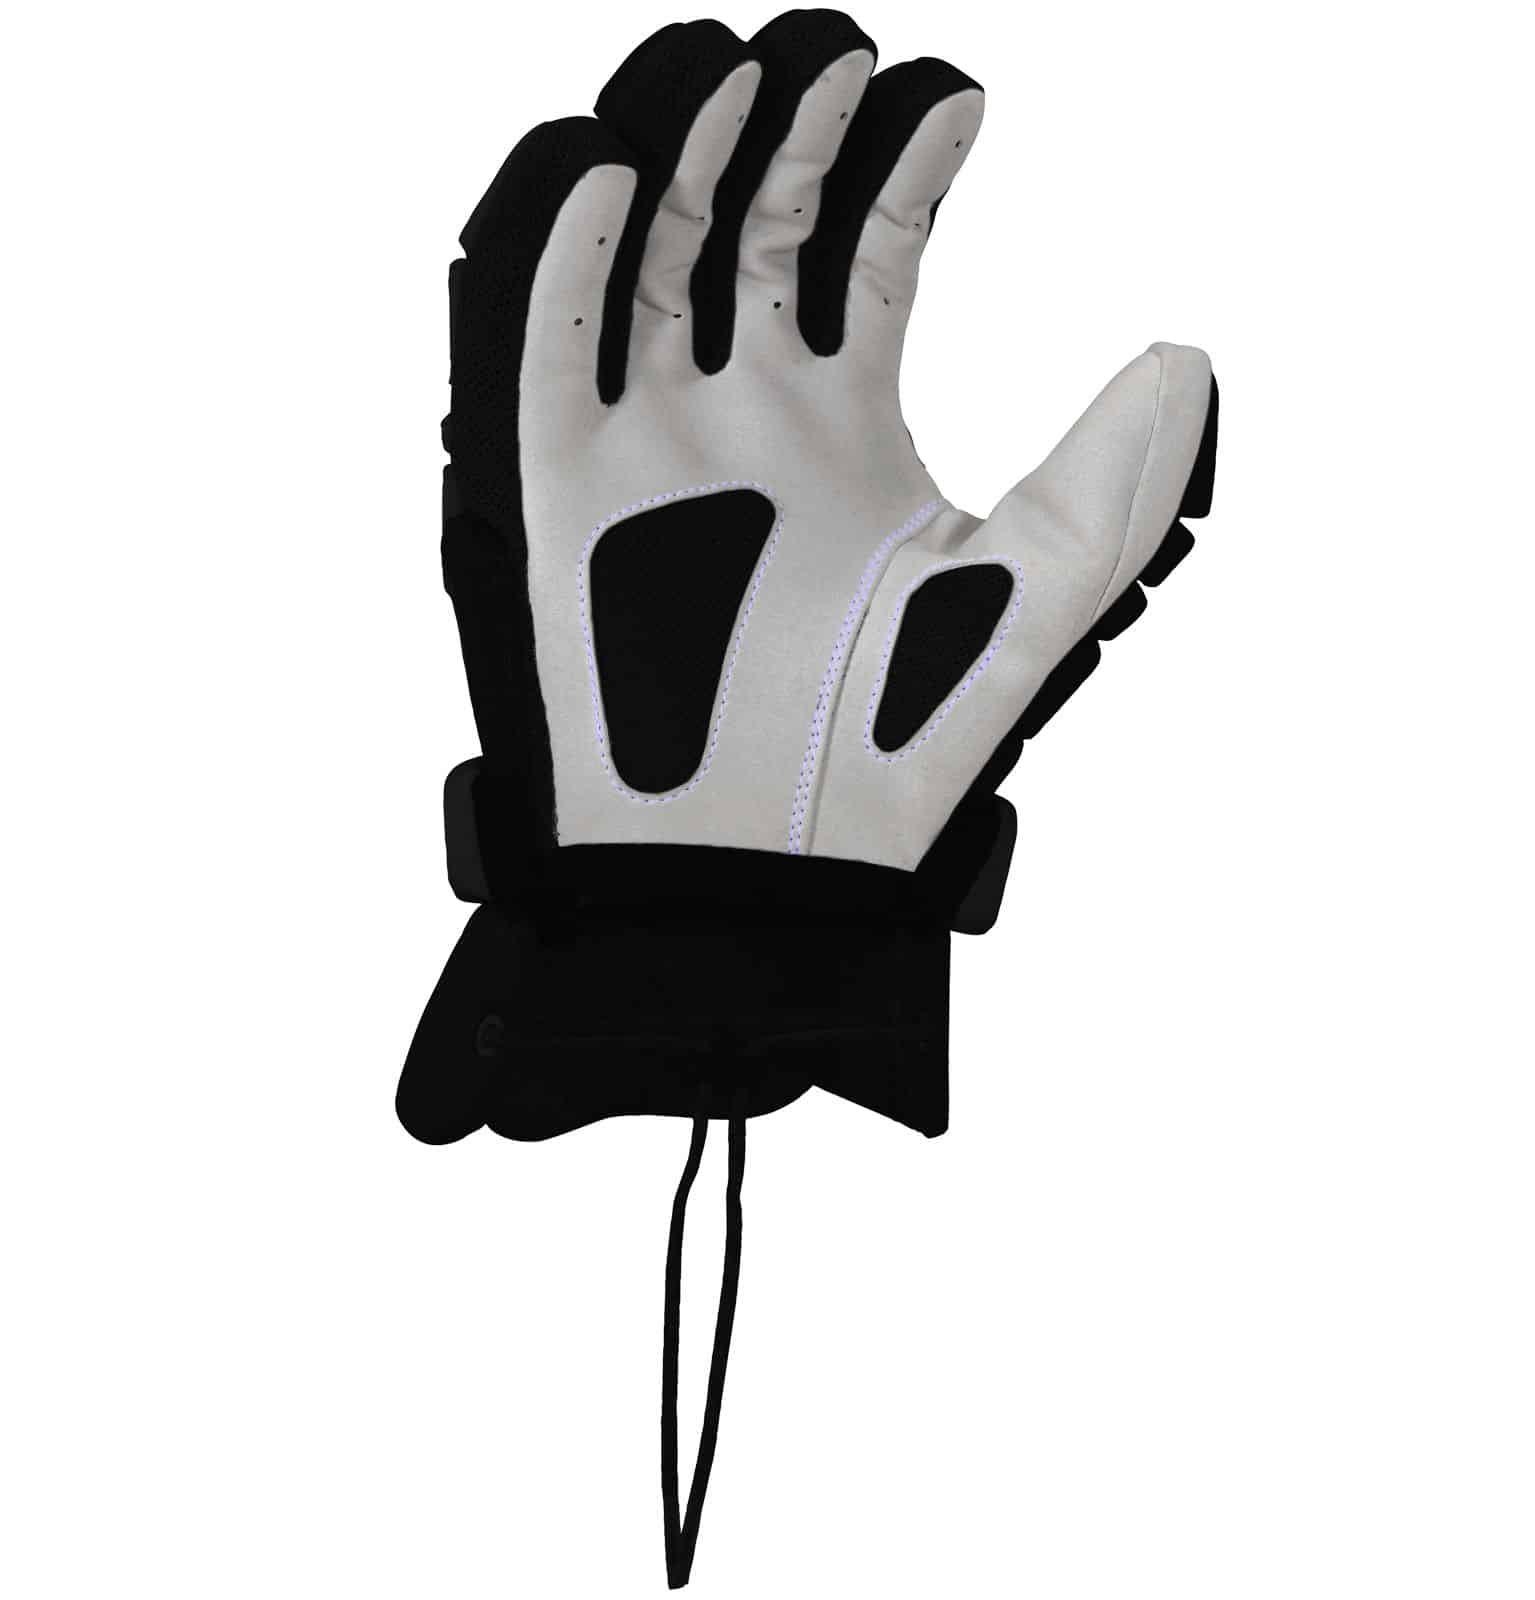 Buy Warrior Fatboy Box Lacrosse Gloves Online - Buy Lacrosse Gear